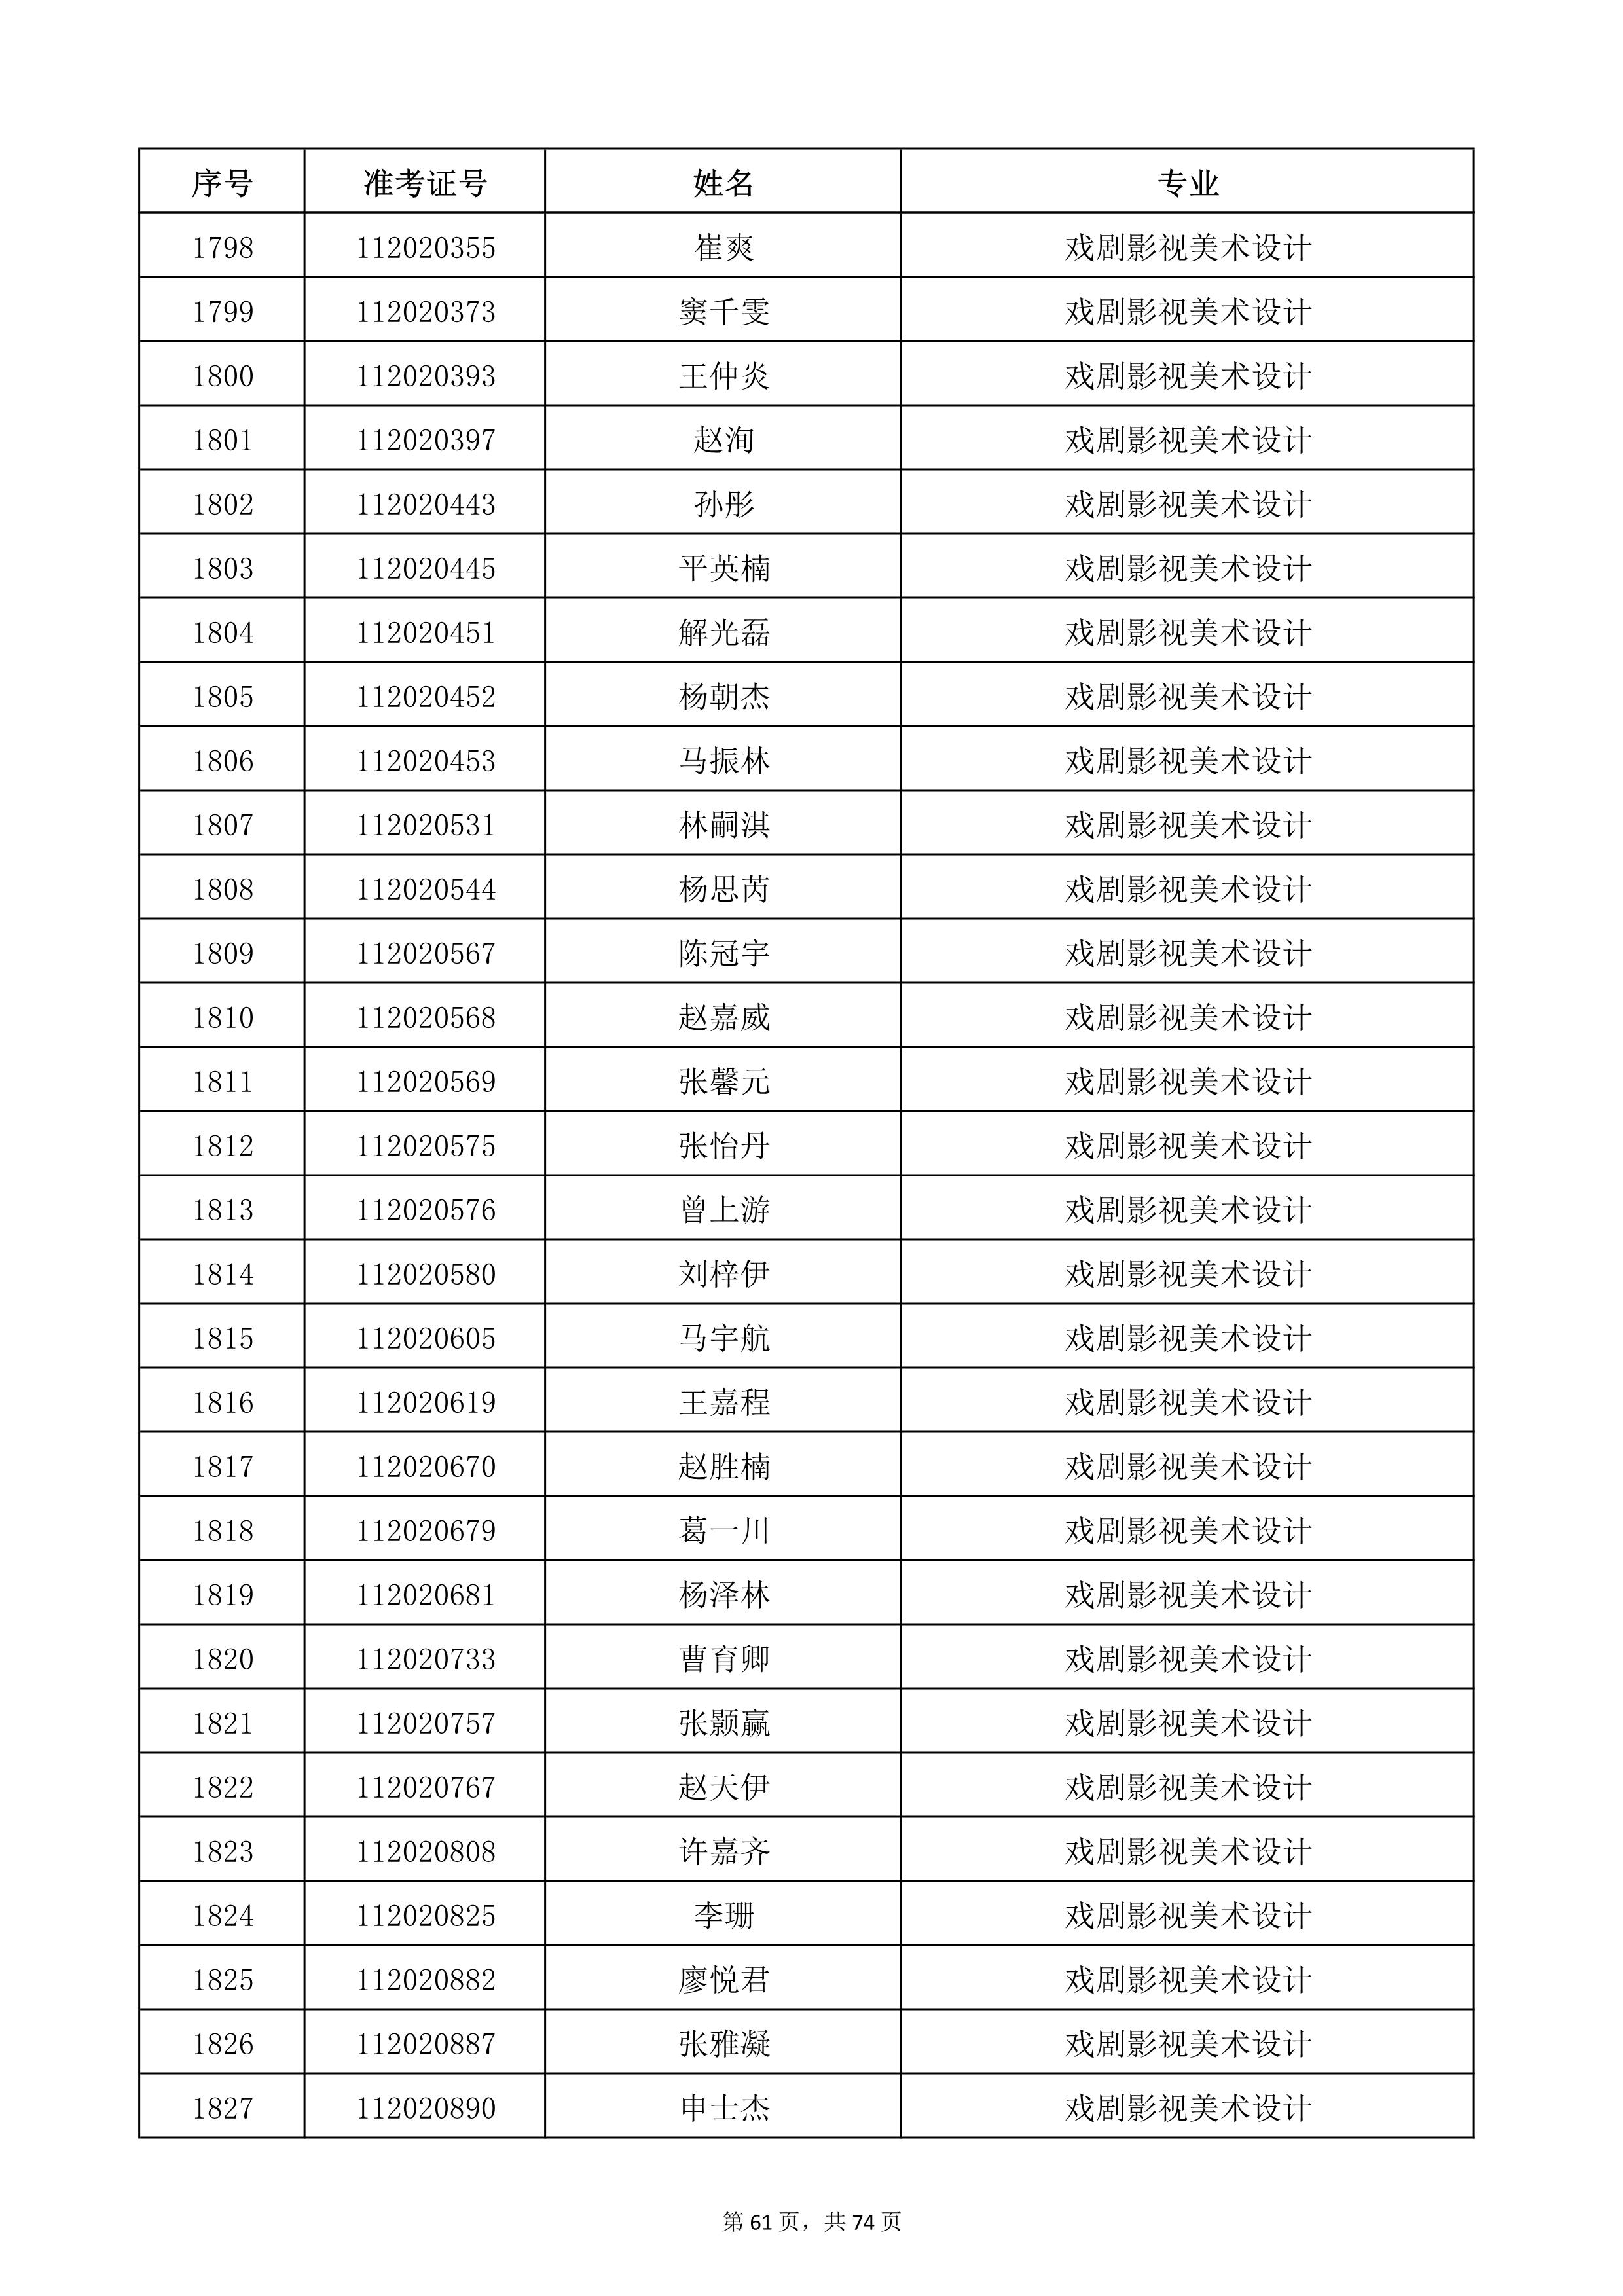 天津音乐学院2022年本科招生考试复试名单_61.jpg